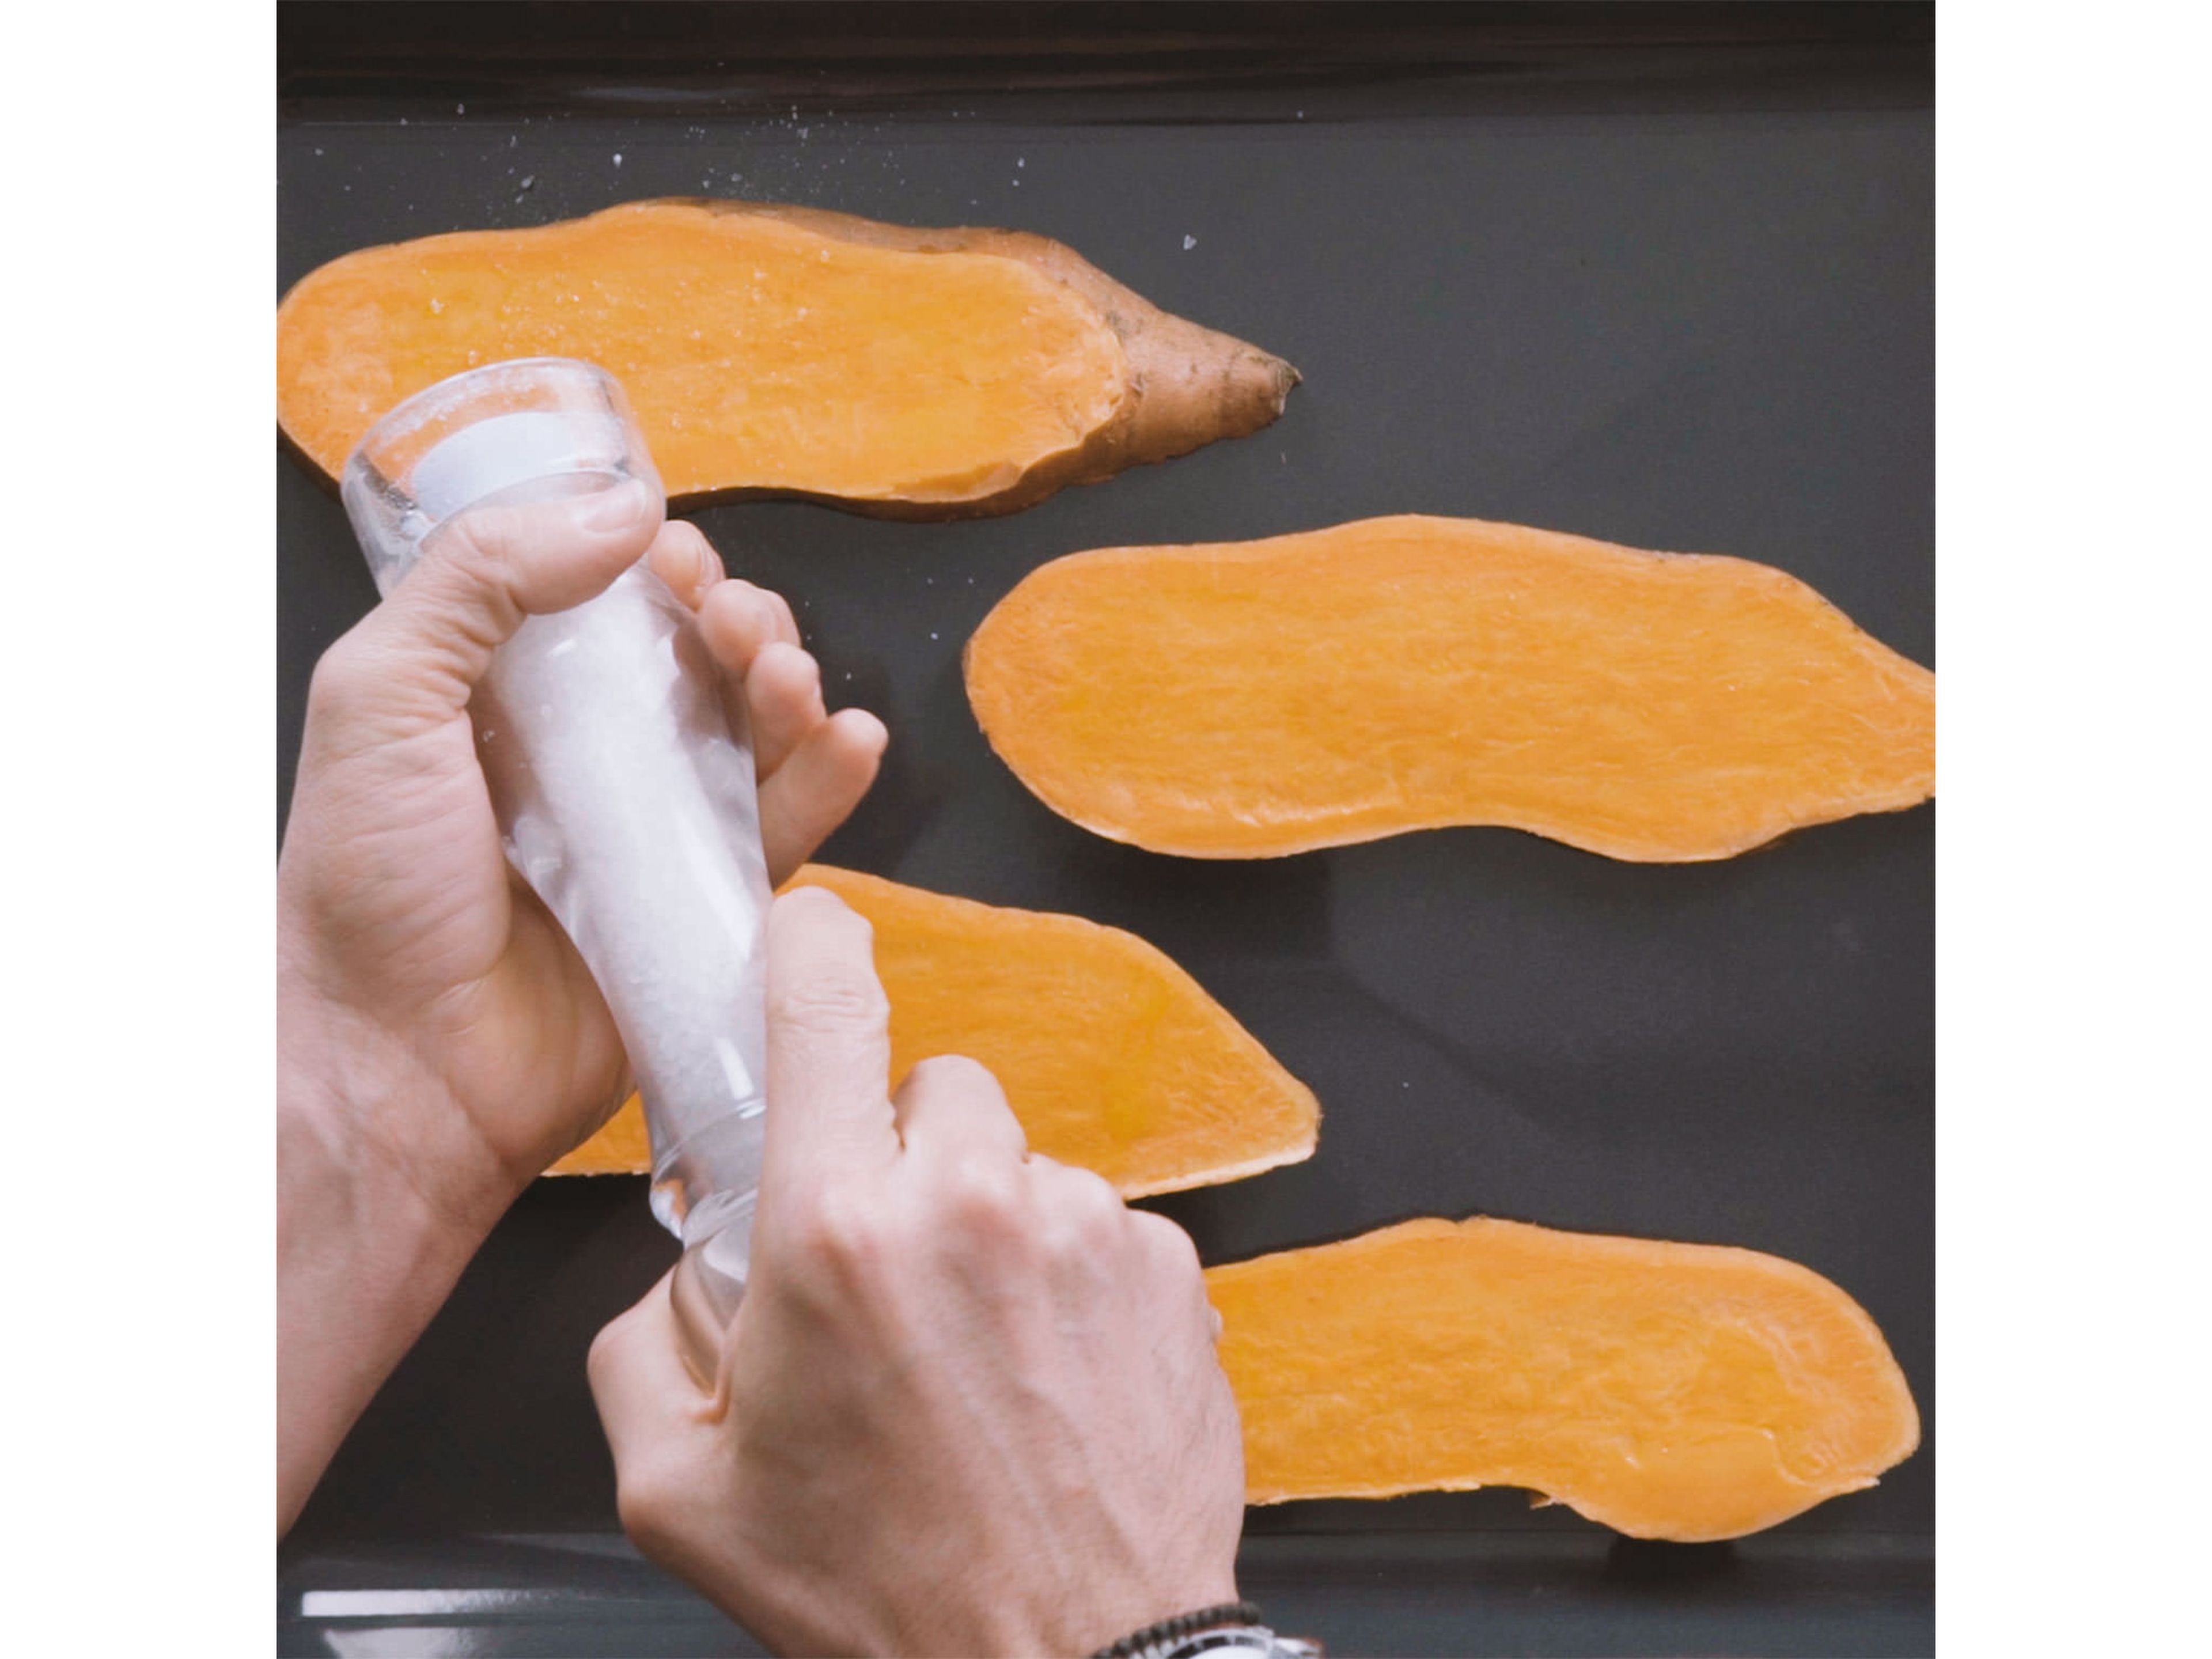 Backofen auf 180°C vorheizen. Süßkartoffel in circa 1 cm dicke Scheiben schneiden und auf einem Backblech verteilen. Von beiden Seiten mit Öl bestreichen und nach Geschmack salzen. Im Ofen bei 180°C ca. 15 Min. backen.